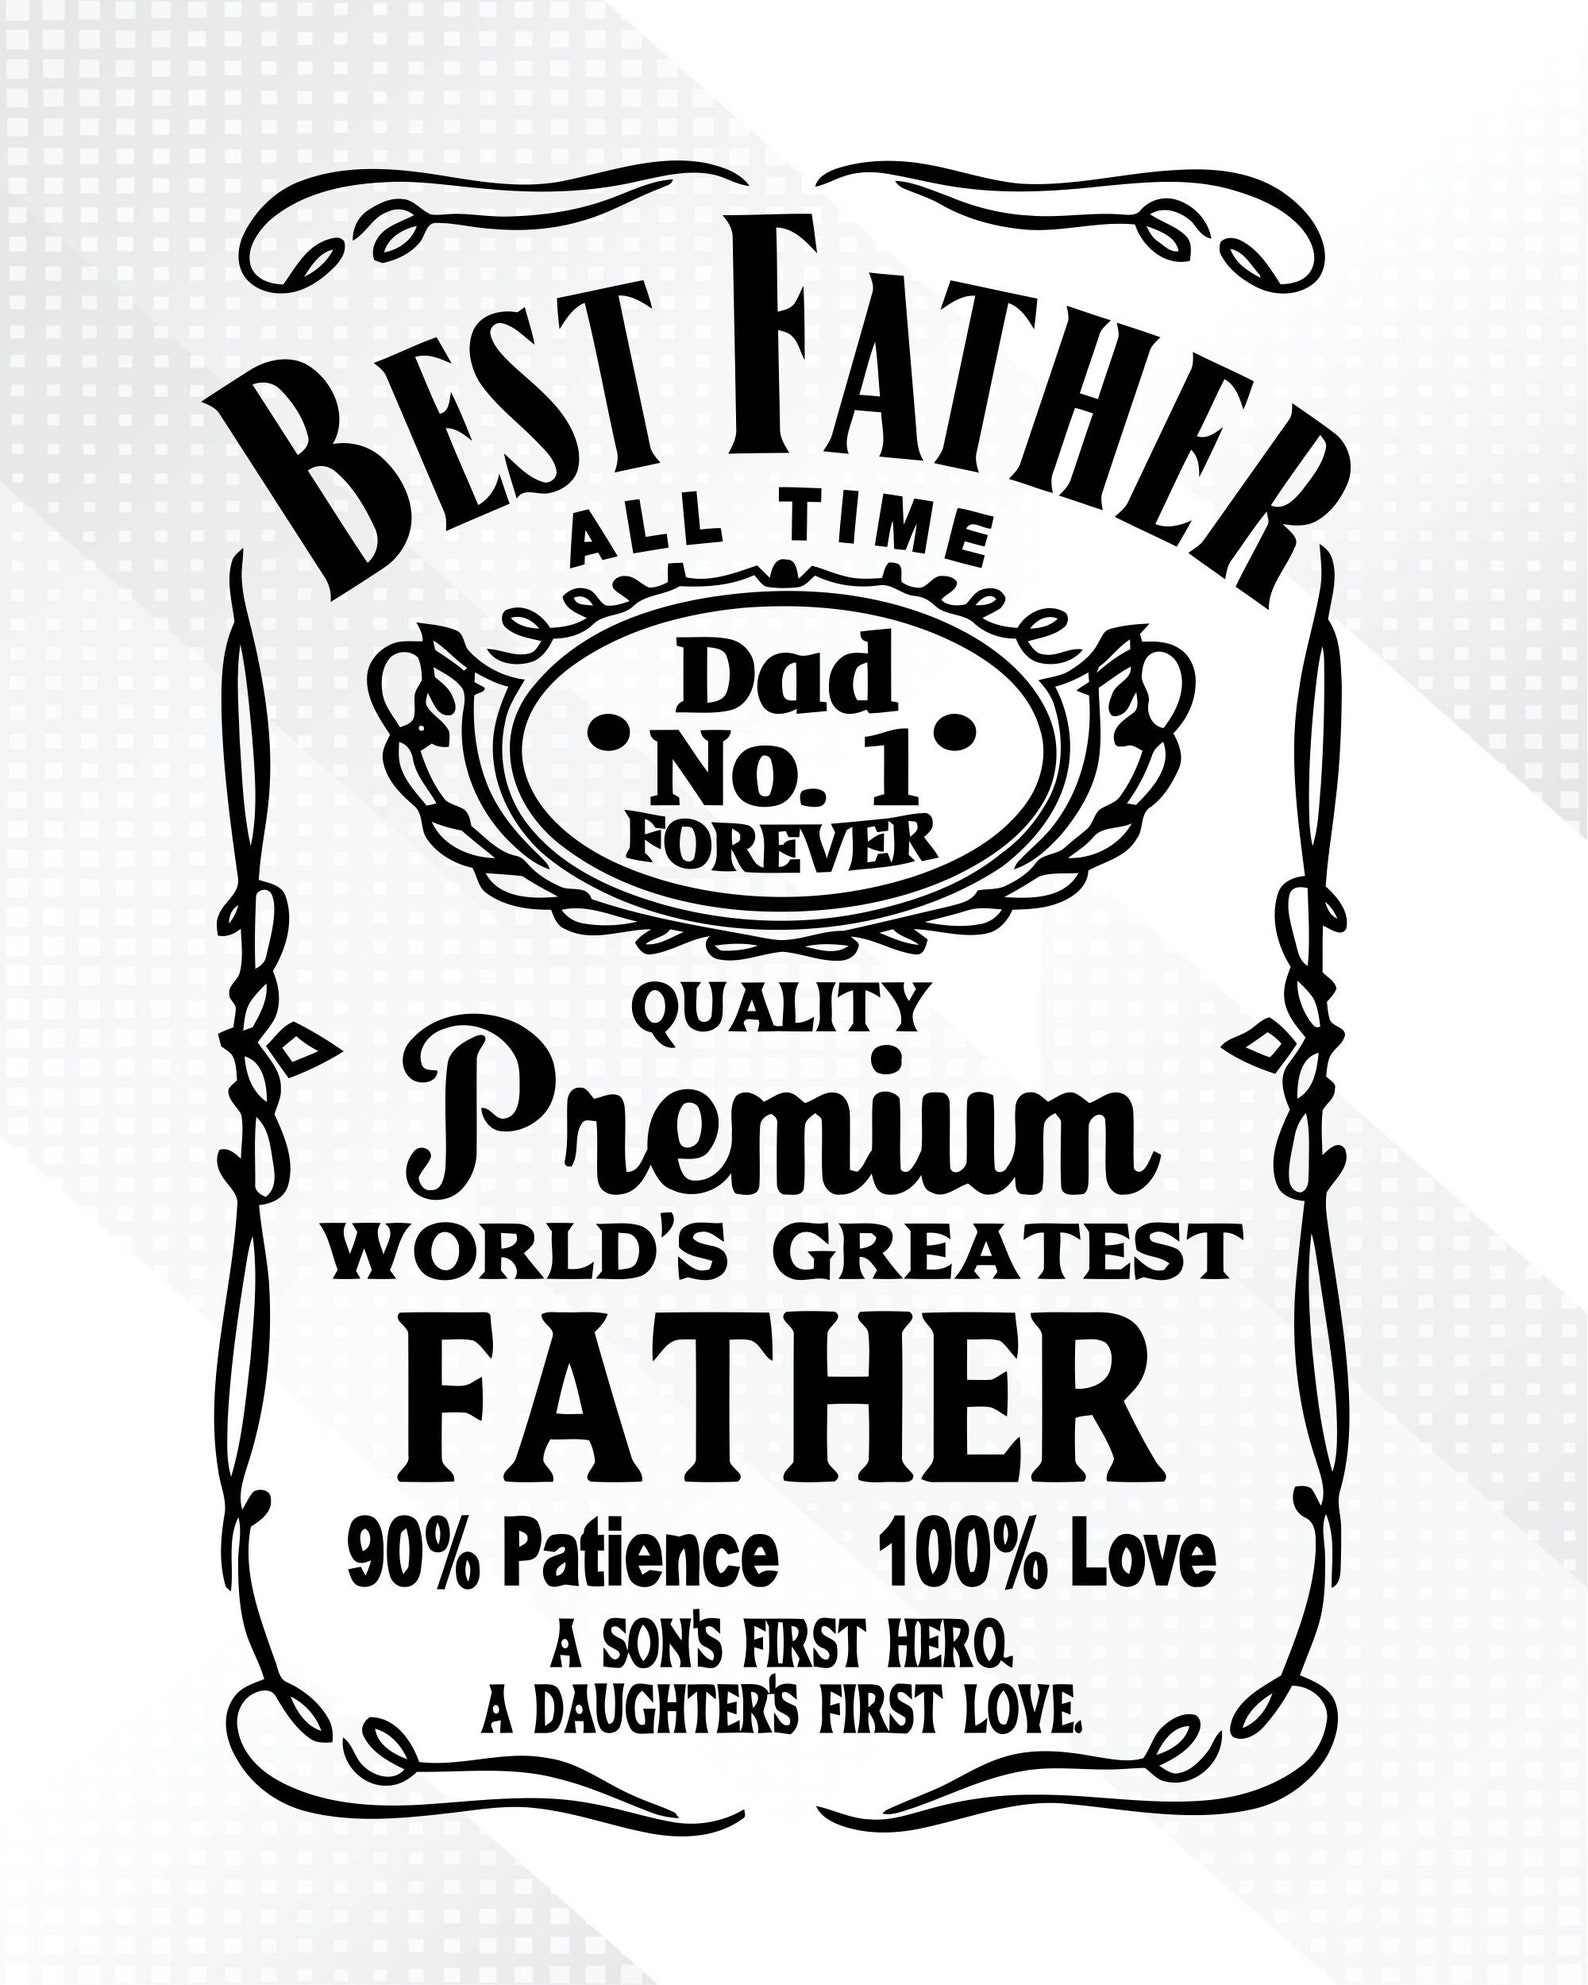 Best Dad Svg All Time Dad No1 Svg Best Dad All Time Svg Dad No1 Svg ...